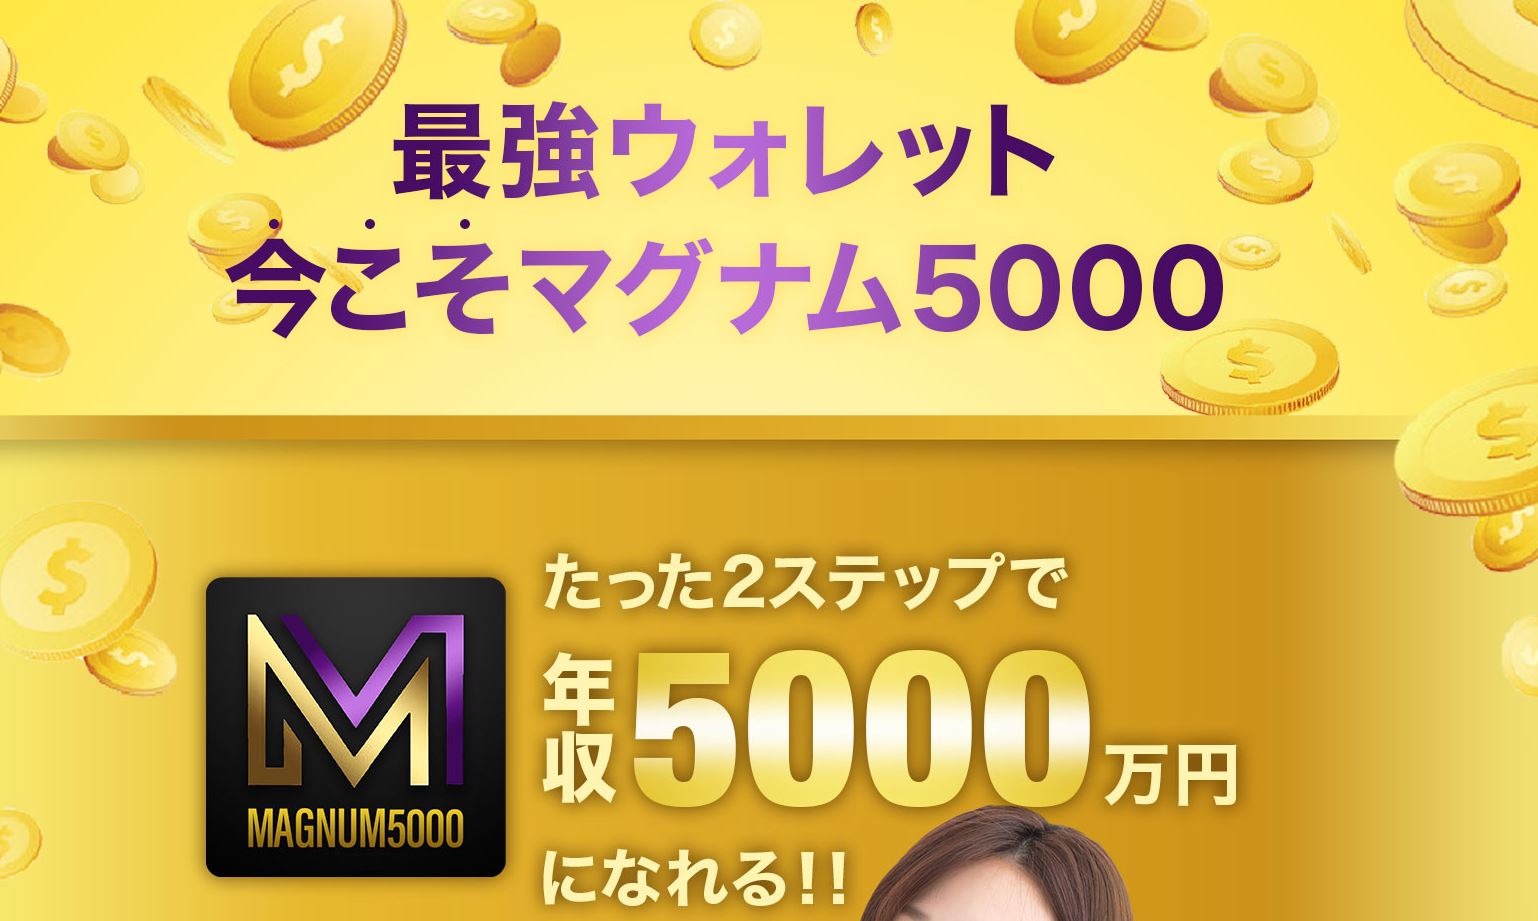 MAGNUM5000 ( マグナム5000 )